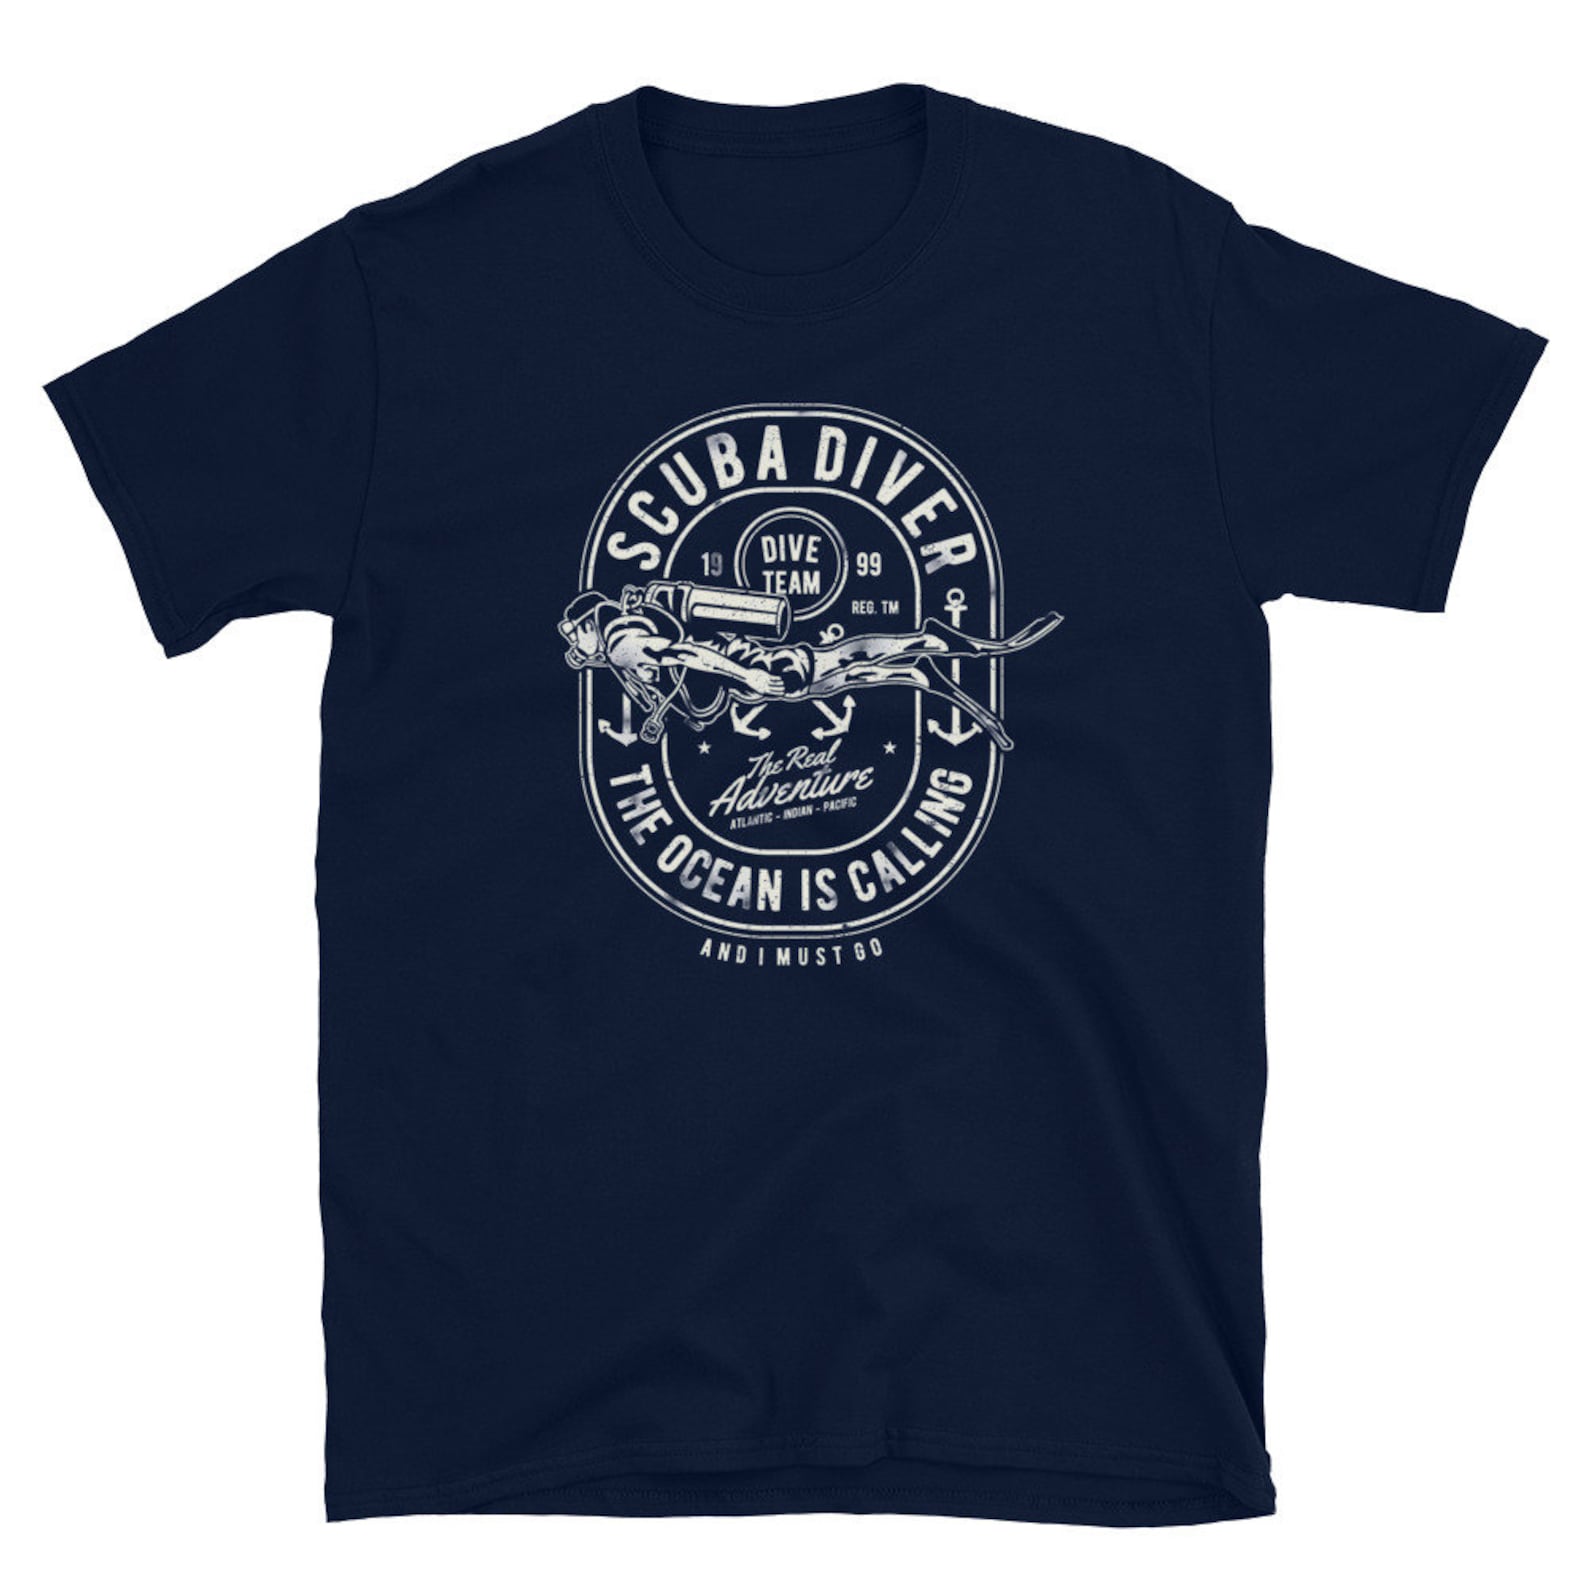 Scuba Diving T-shirt Dive Team Unisex T-shirt the Ocean is | Etsy